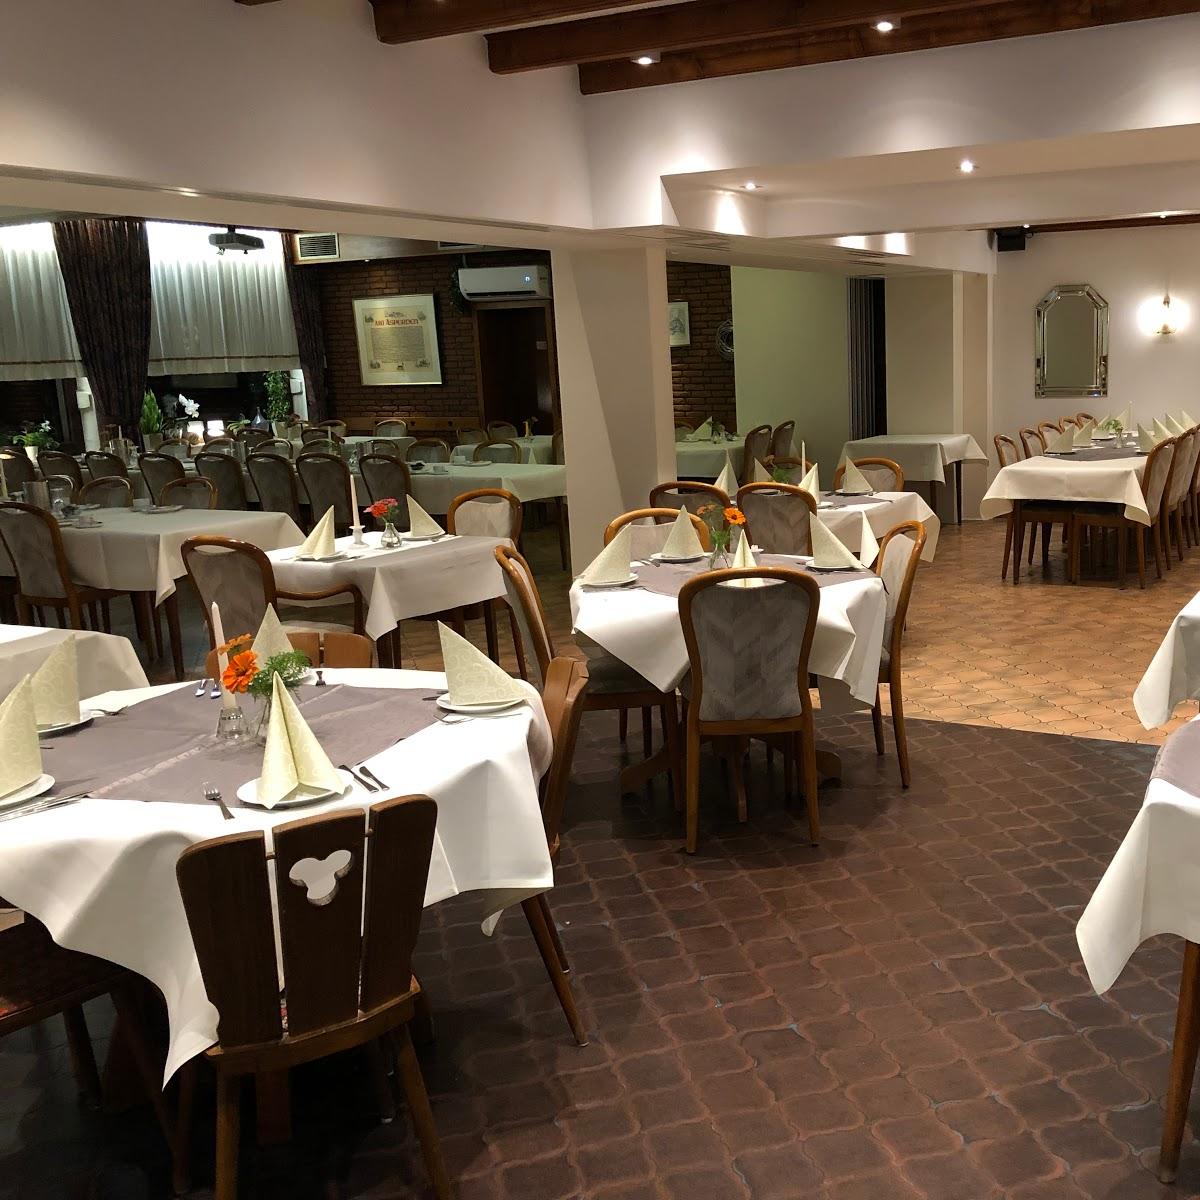 Restaurant "Hotel Restaurant Zum Schwan" in Goch